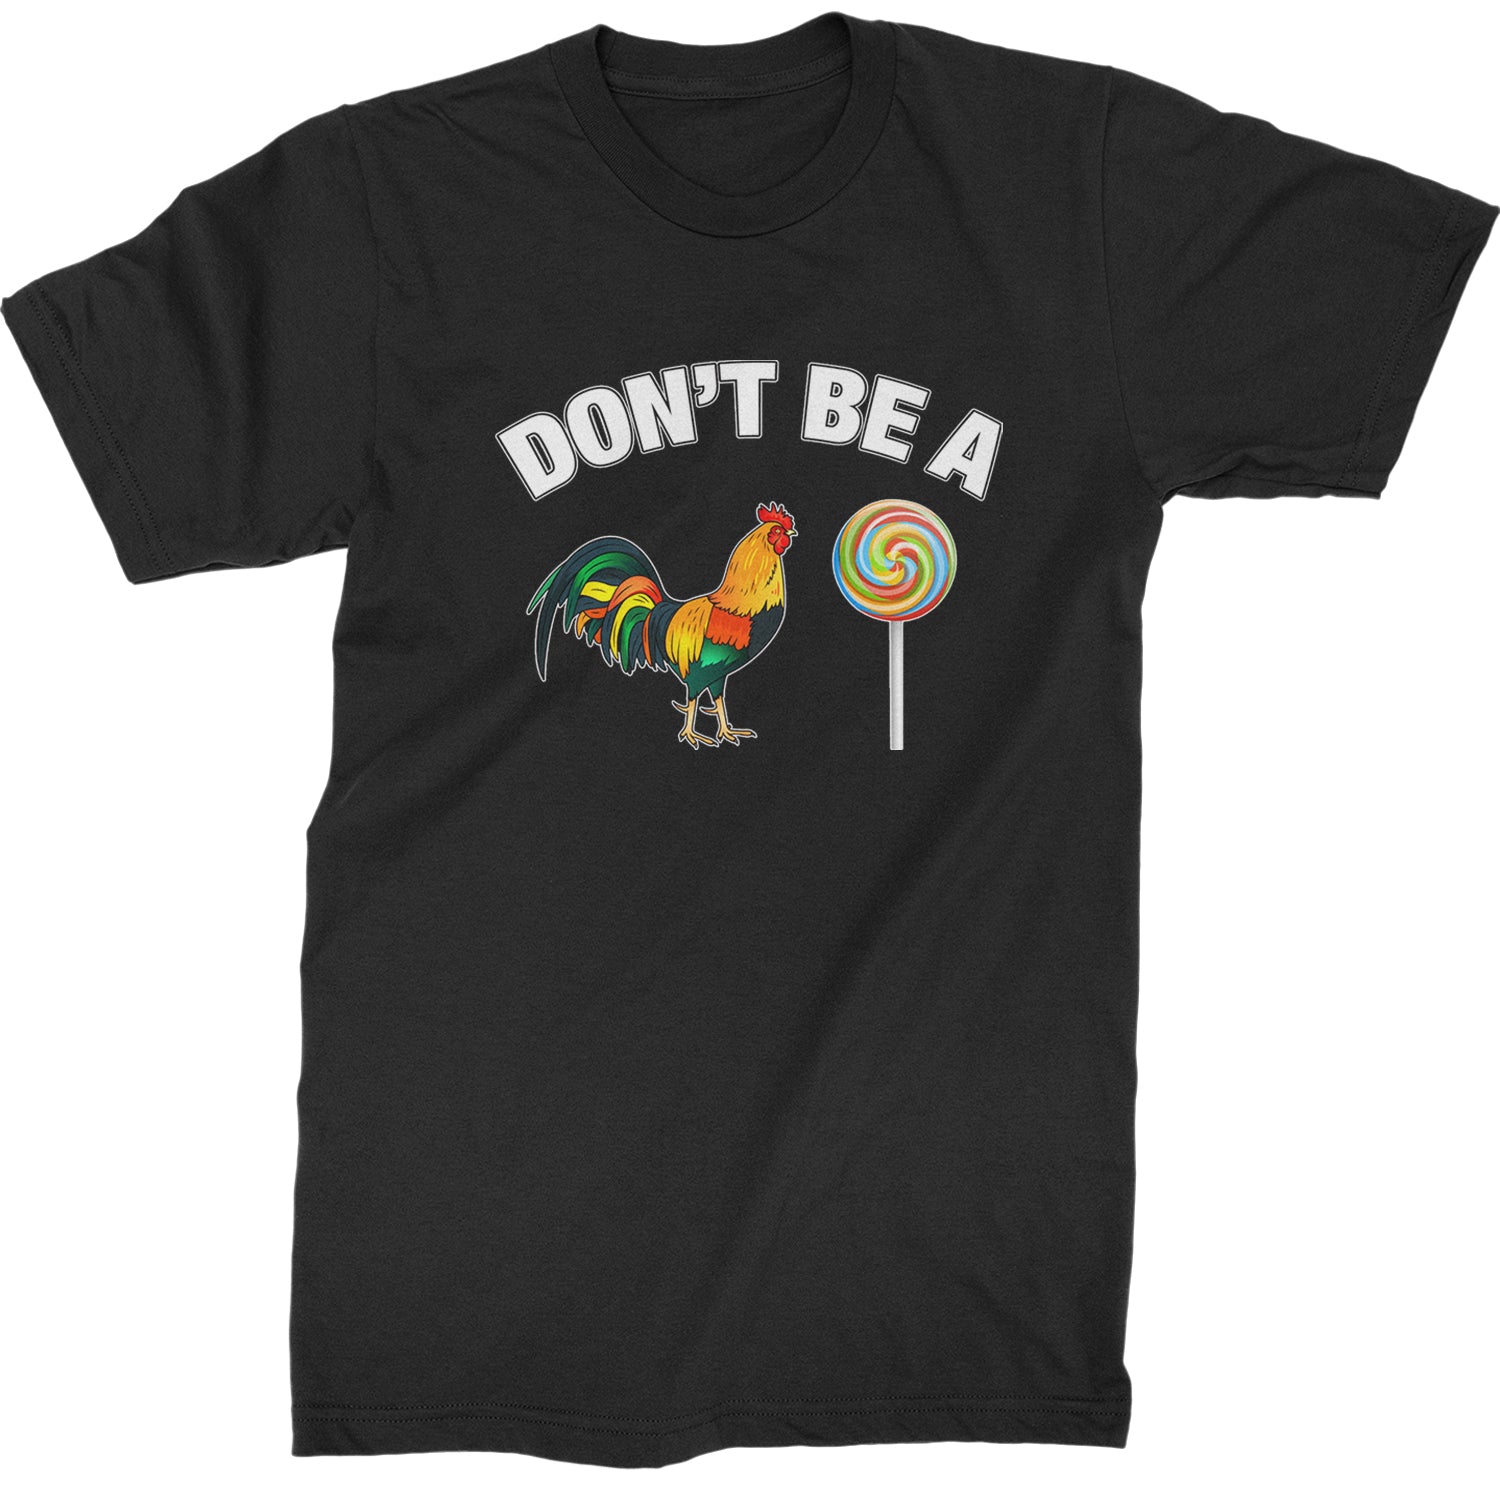 Don't Be A C-ck Sucker Funny Sarcastic Mens T-shirt